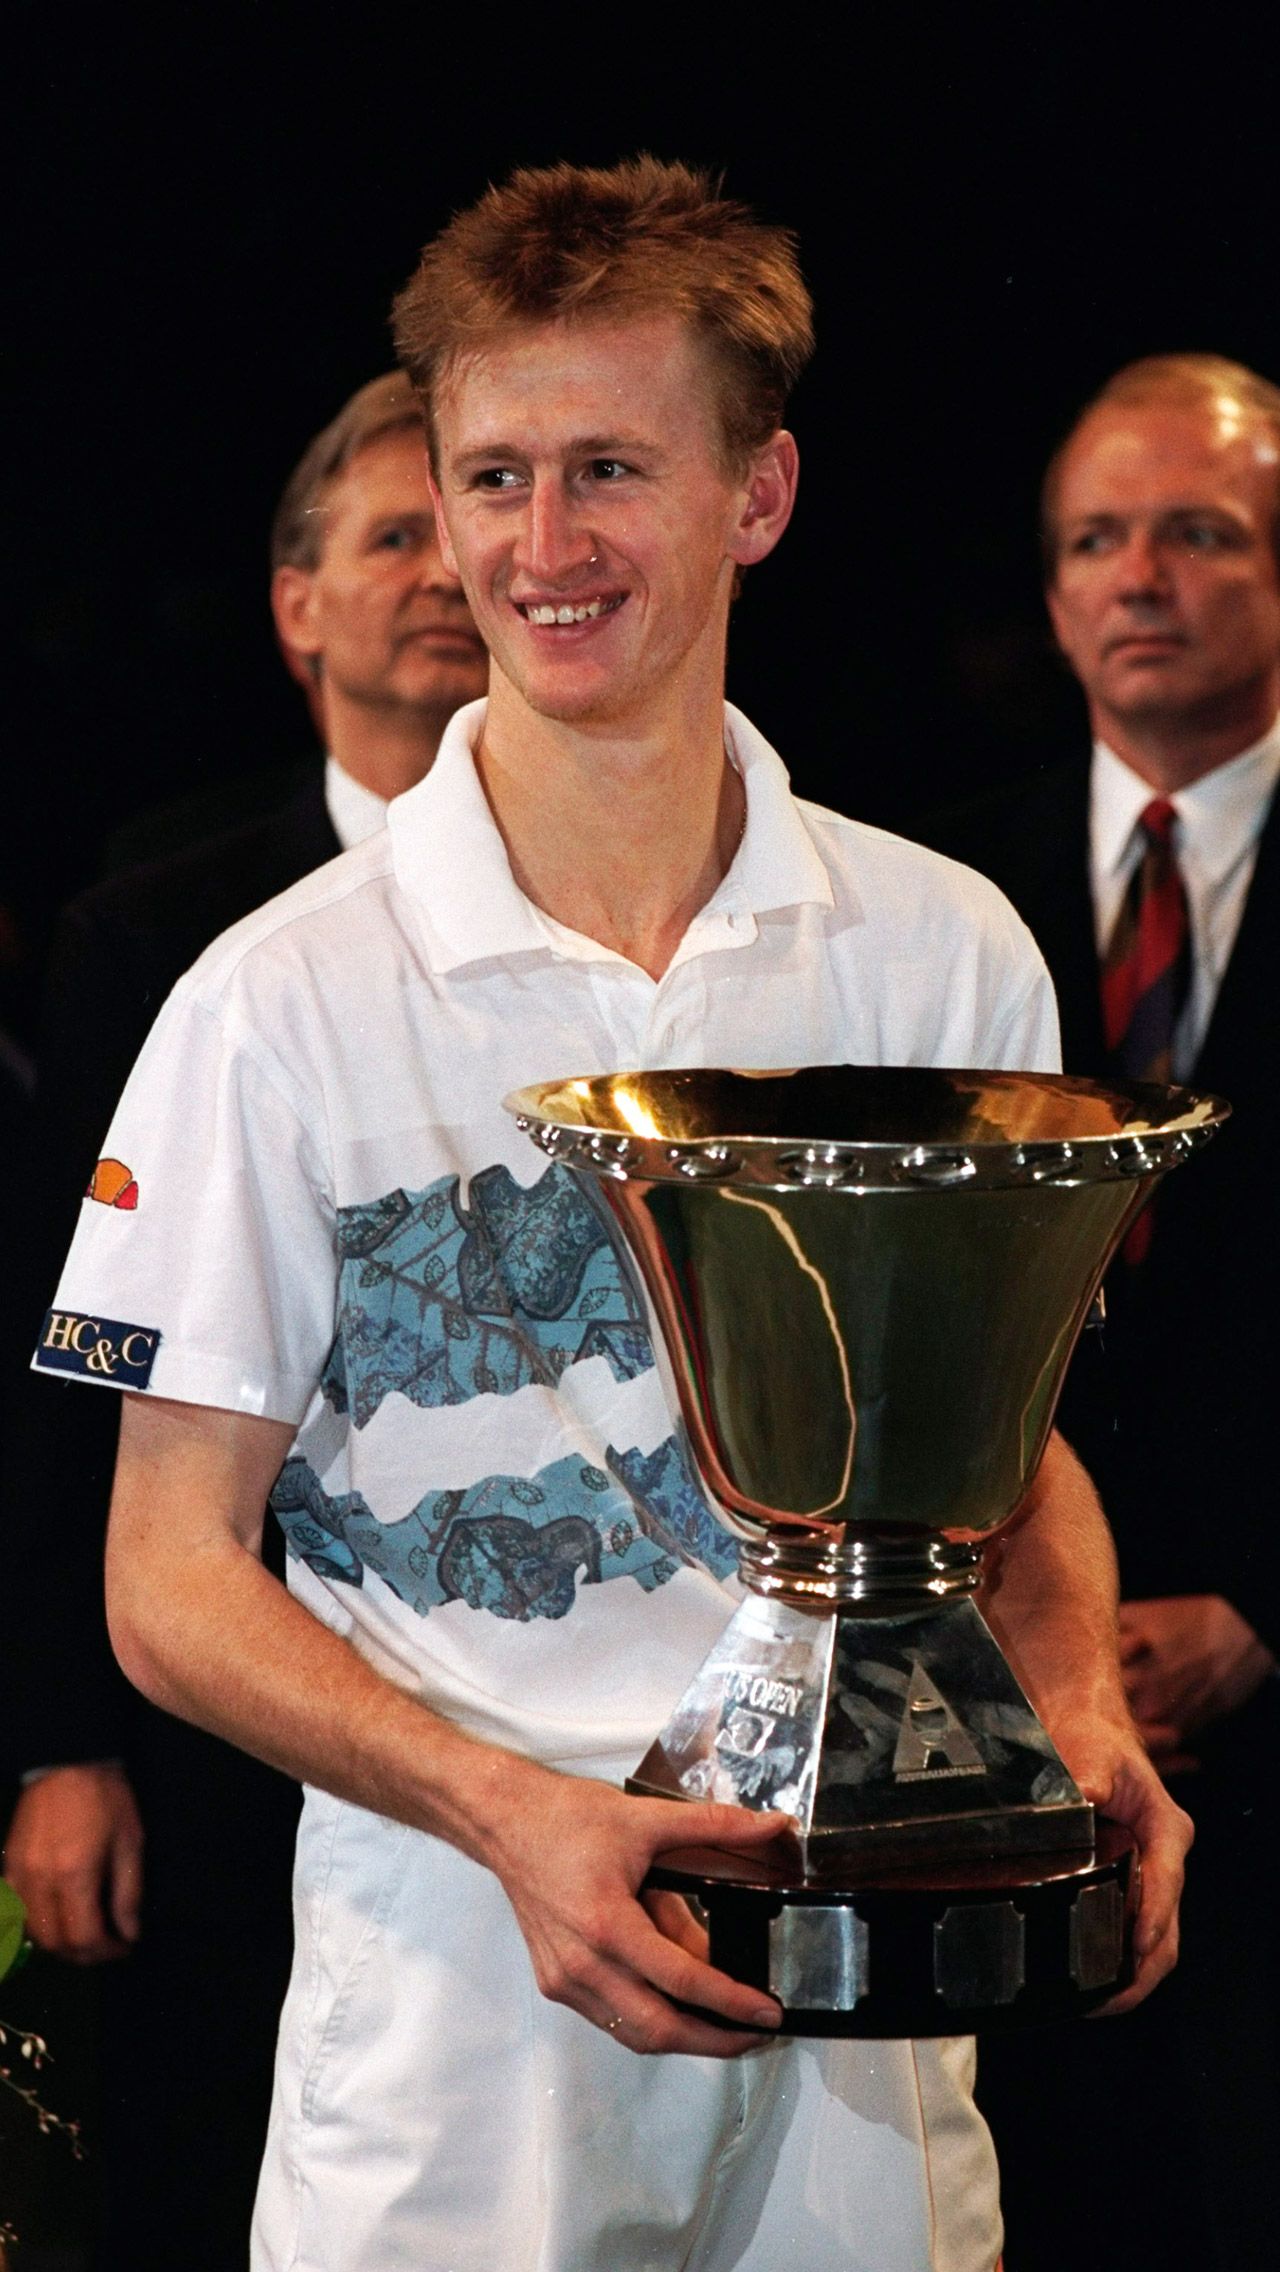 Себастьян Корда продолжает славное дело своего отца — известного чешского теннисиста Петра Корды, который выиграл за карьеру 10 титулов, включая Australian Open — 1998. Пётр добирался до второй строчки рейтинга ATP.